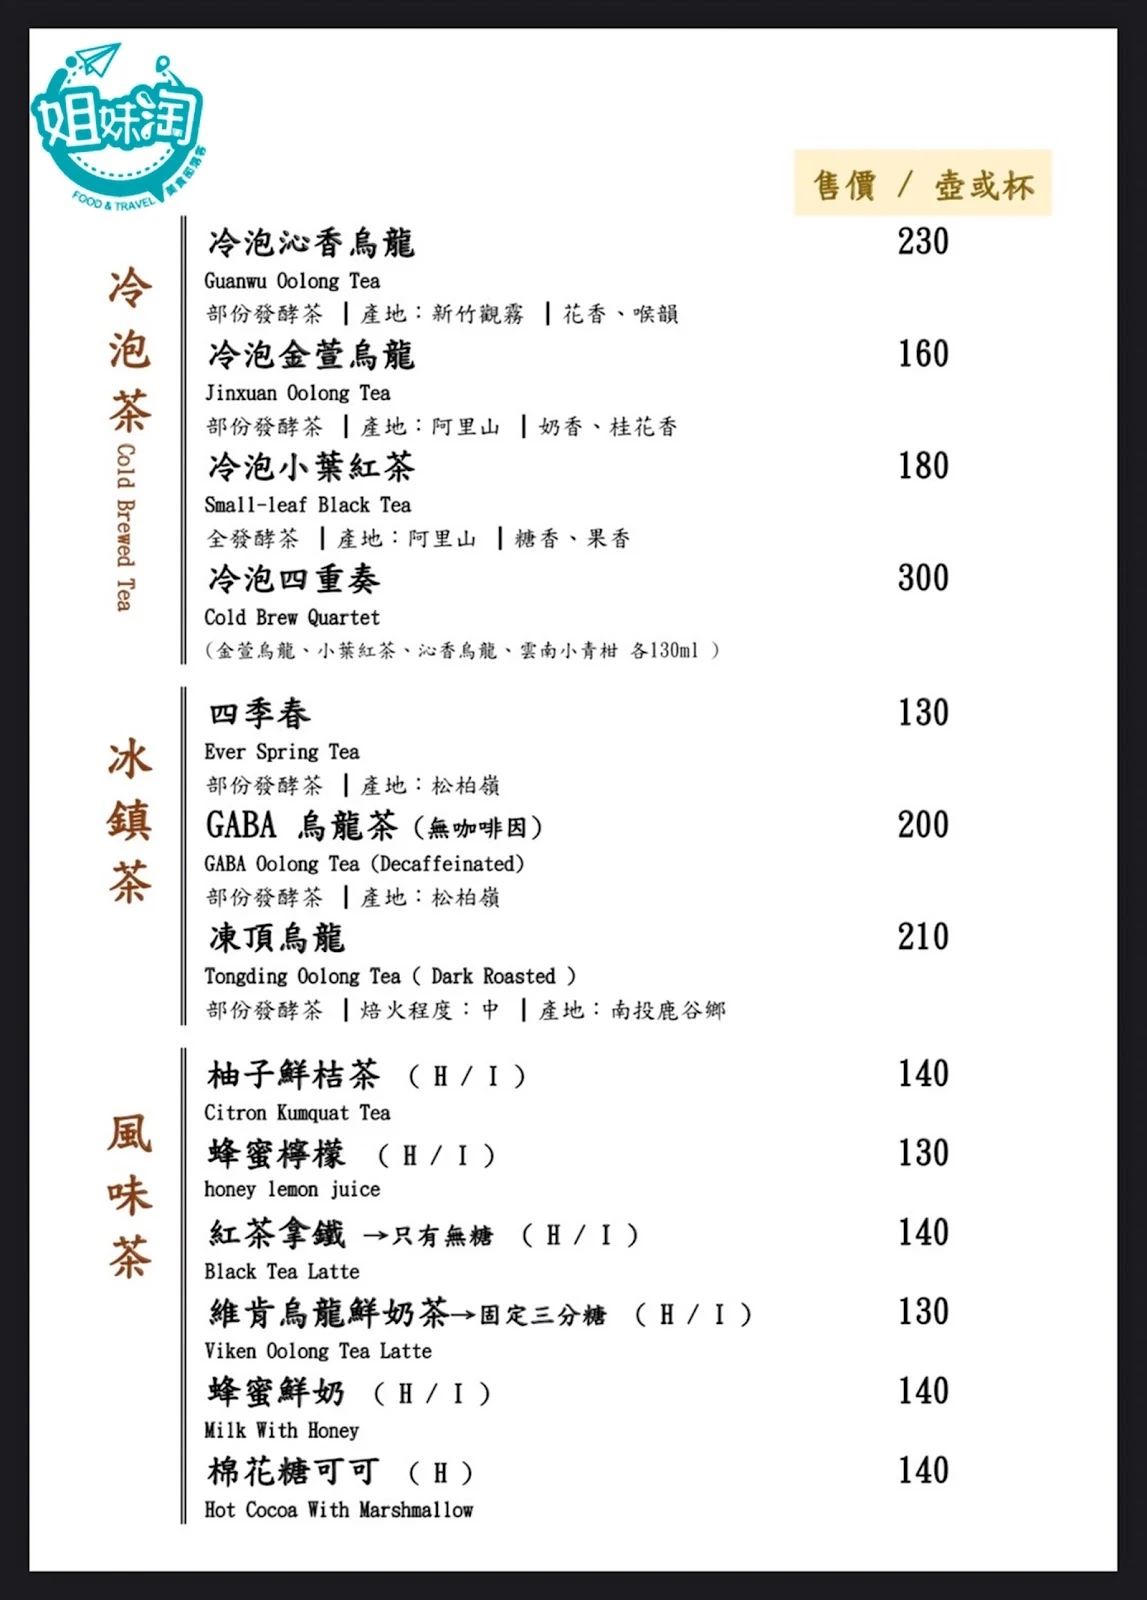 維肯茶藝-菜單